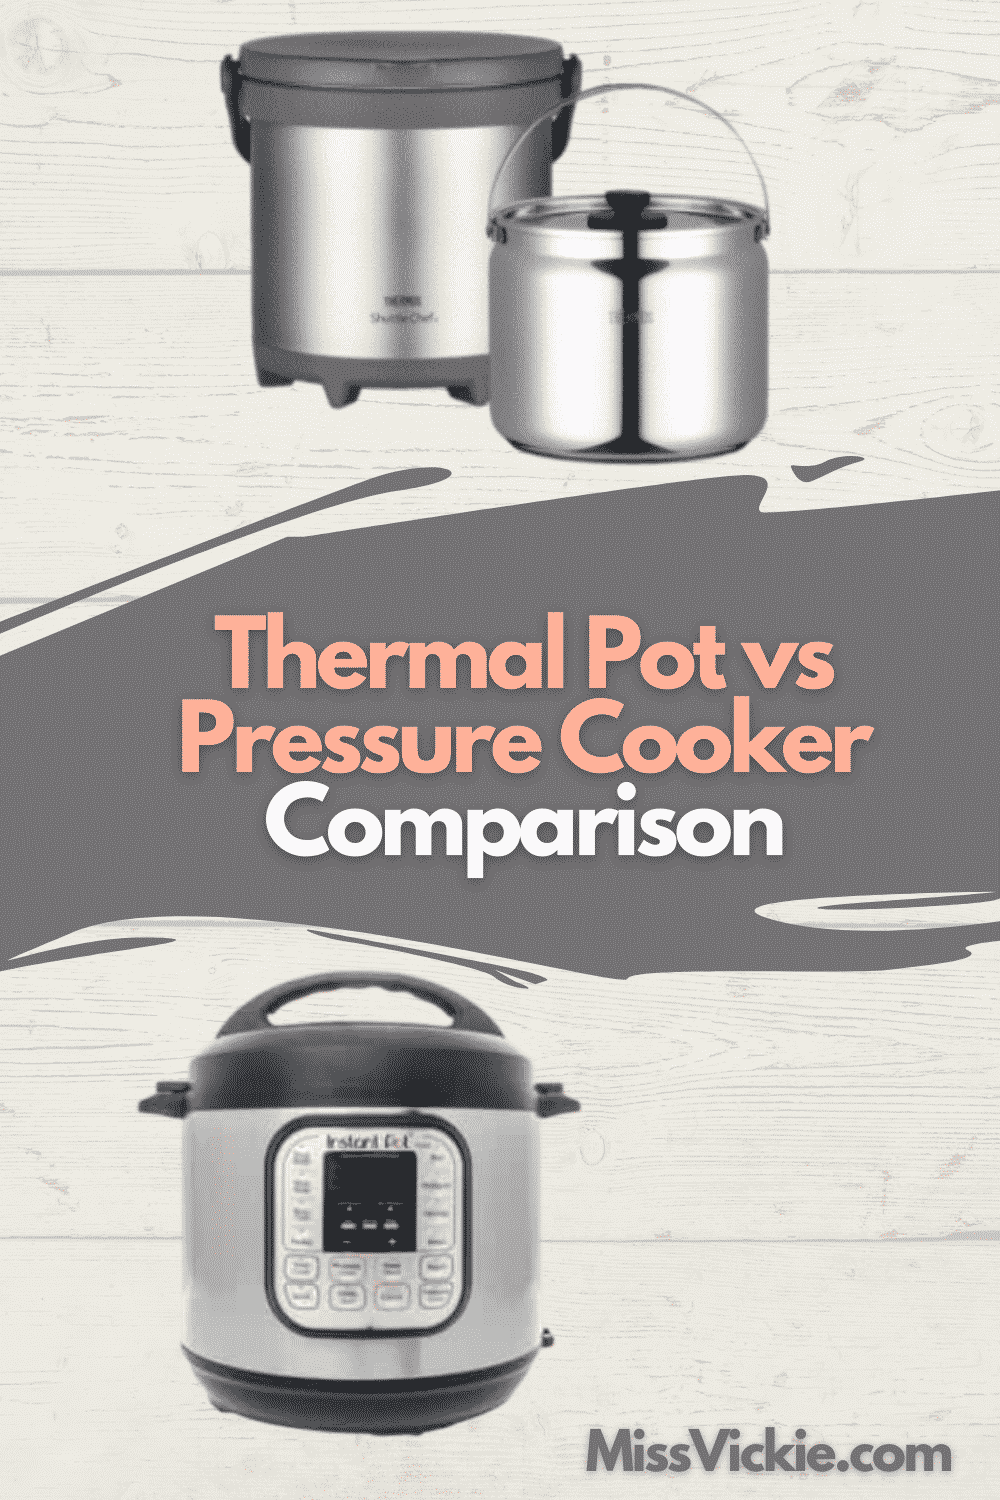 Thermal Pot vs Pressure Cooker